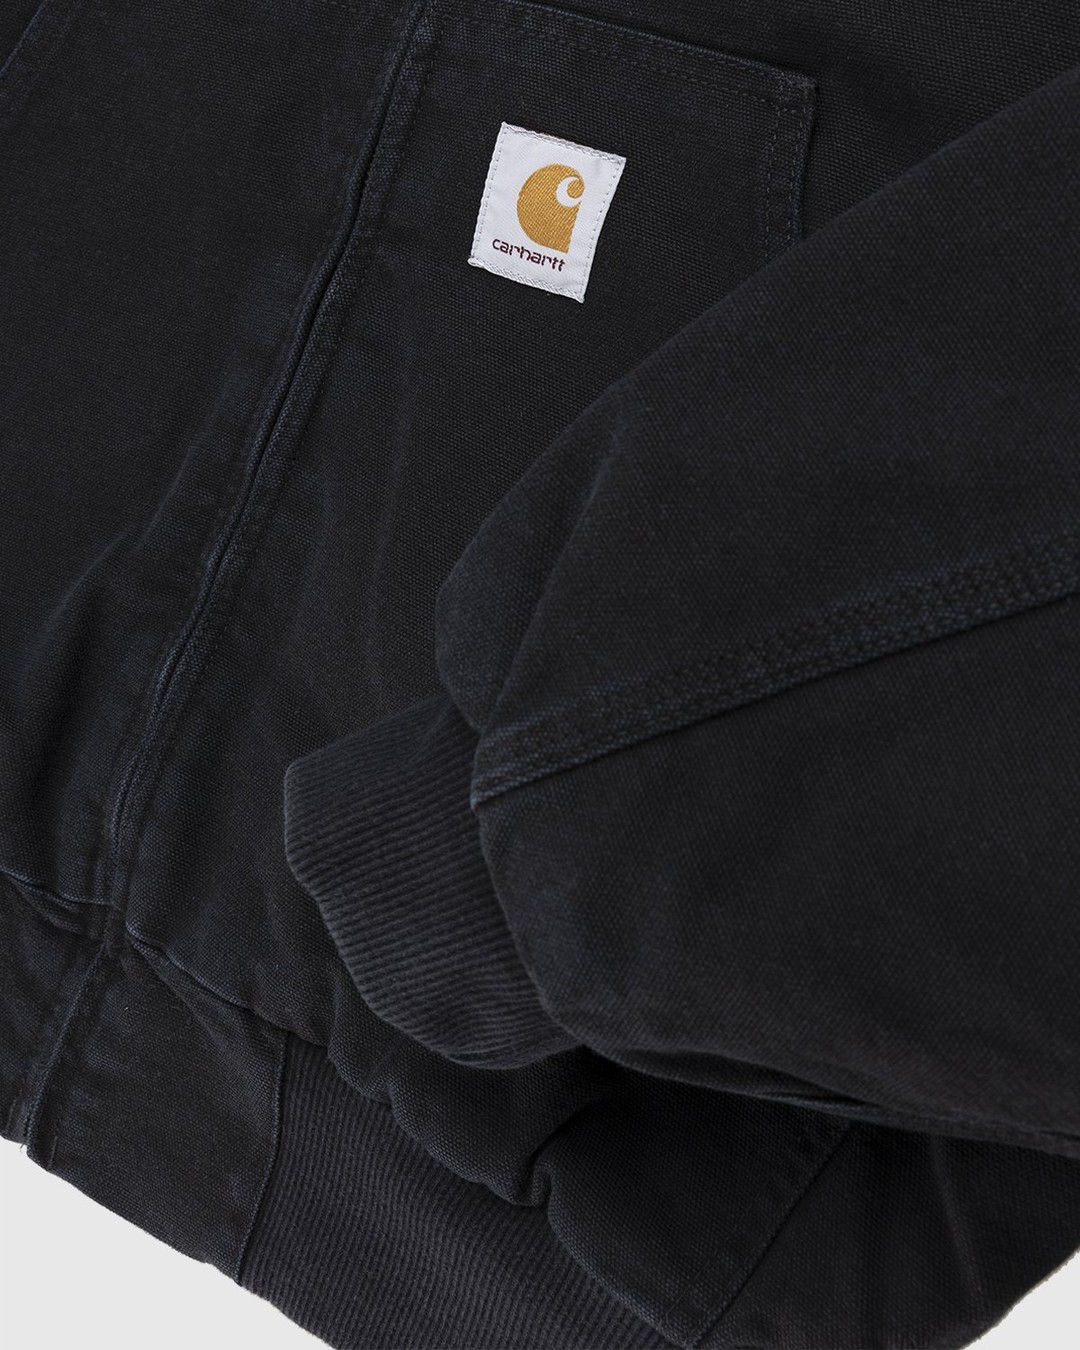 Carhartt WIP – OG Active Jacket Black - Jackets - Black - Image 5